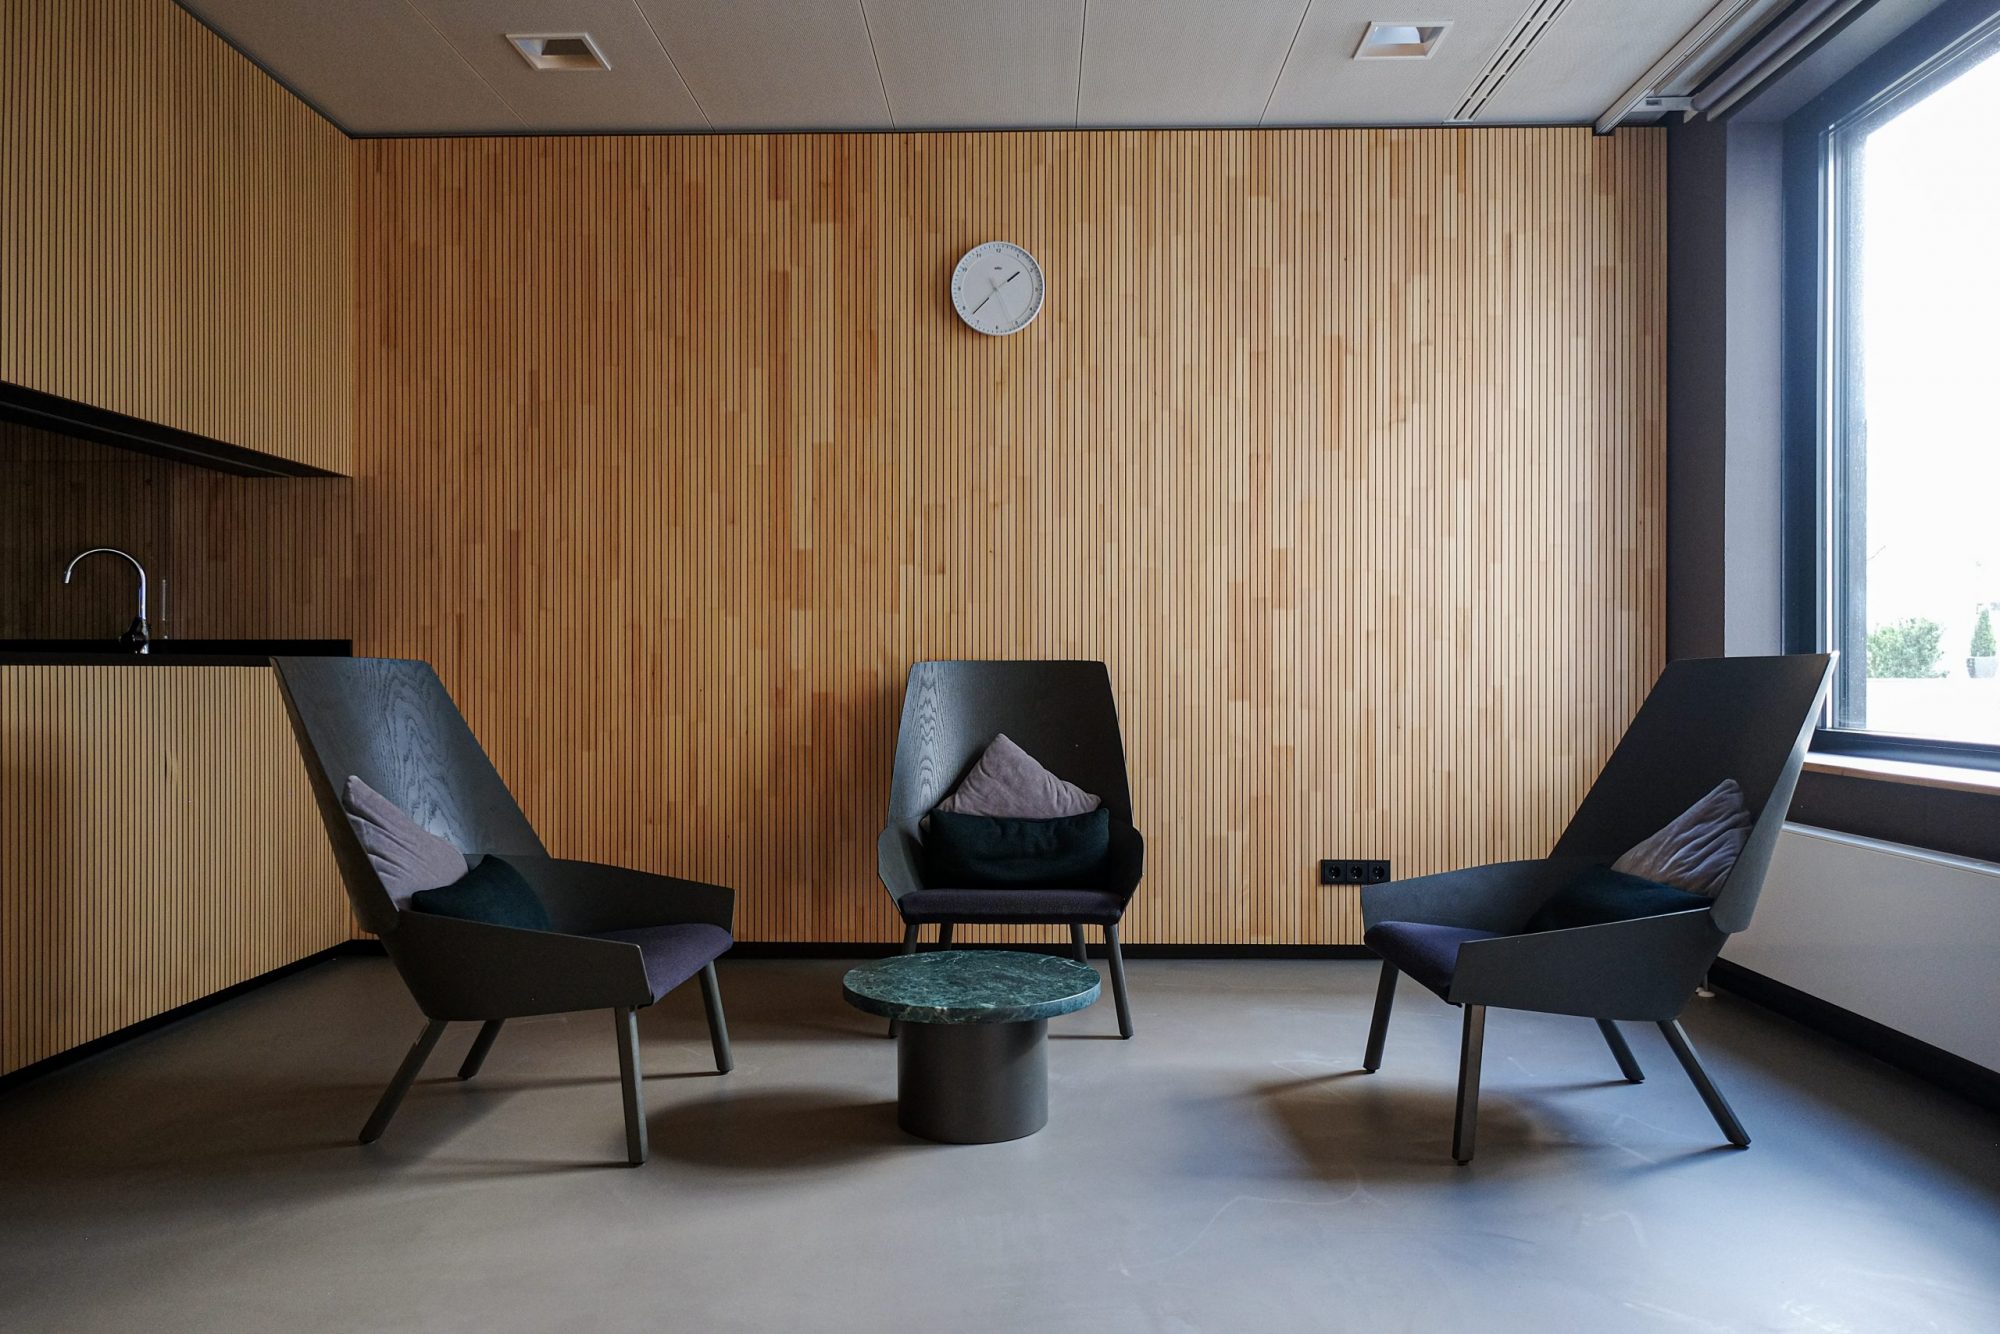 Wartezimmer mit Stühle im Holz und Kaffeetisch von Bolia designed  für Consorsbank in Nürnberg. 